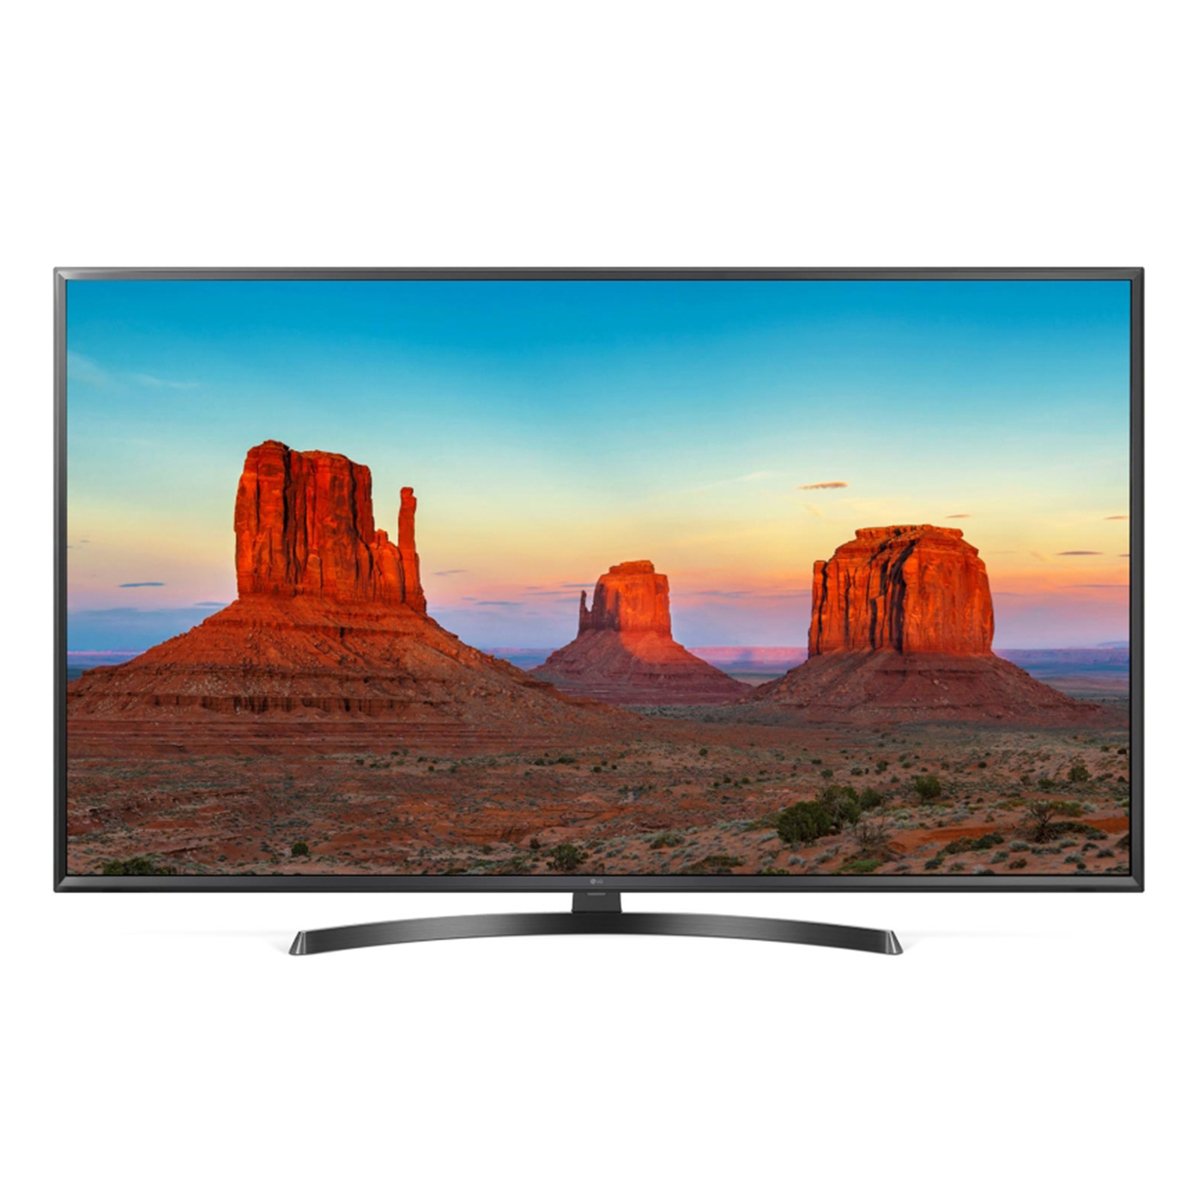 LG Ultra HD Smart LED TV 49UK6400PVC 49inch